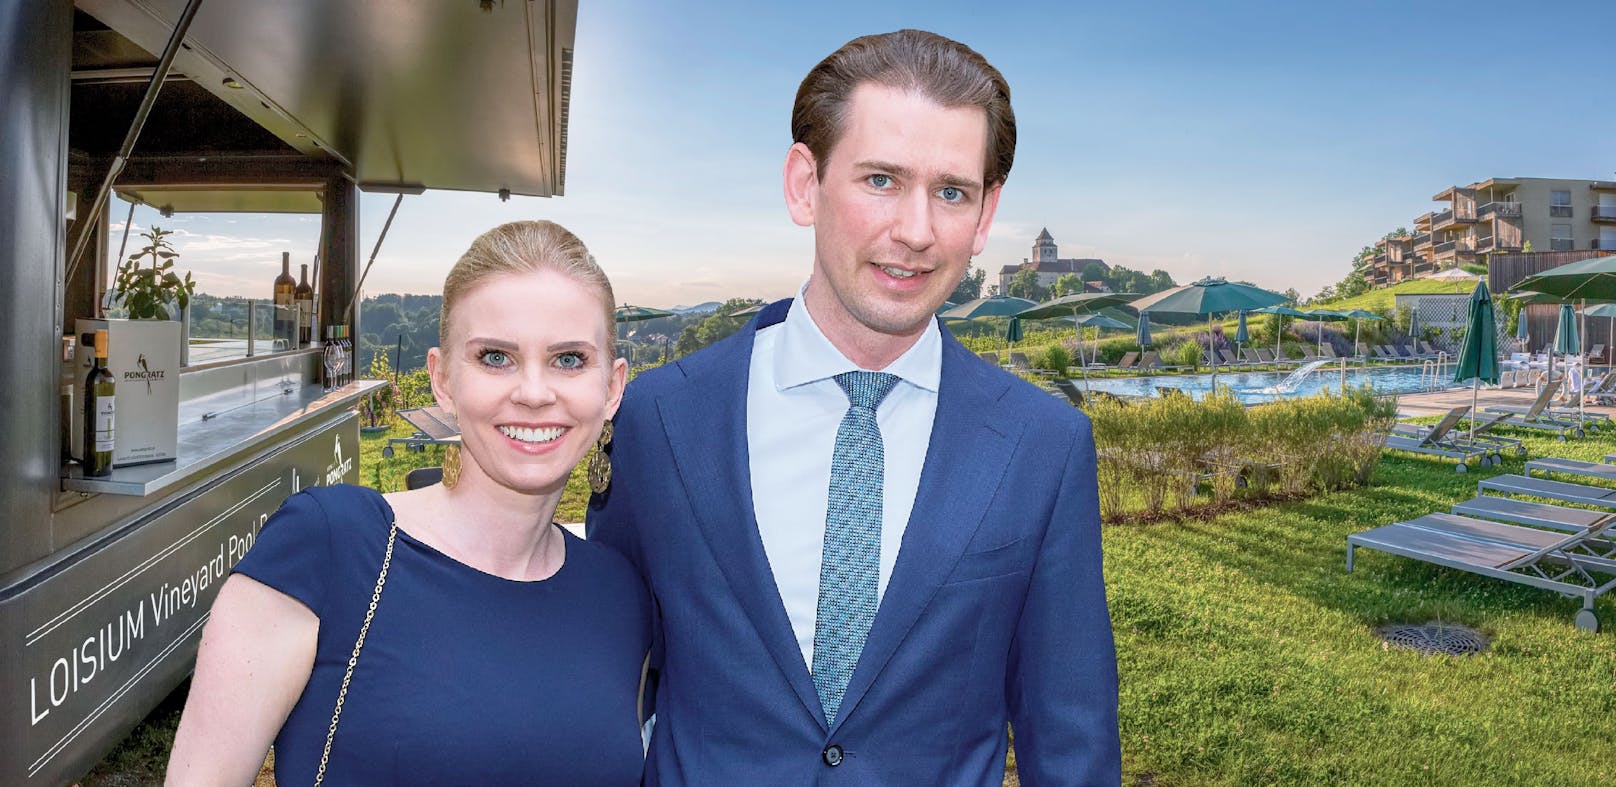 Sebastian Kurz soll seine Susanne gerüchteweise im Loisium in der Steiermark heiraten.